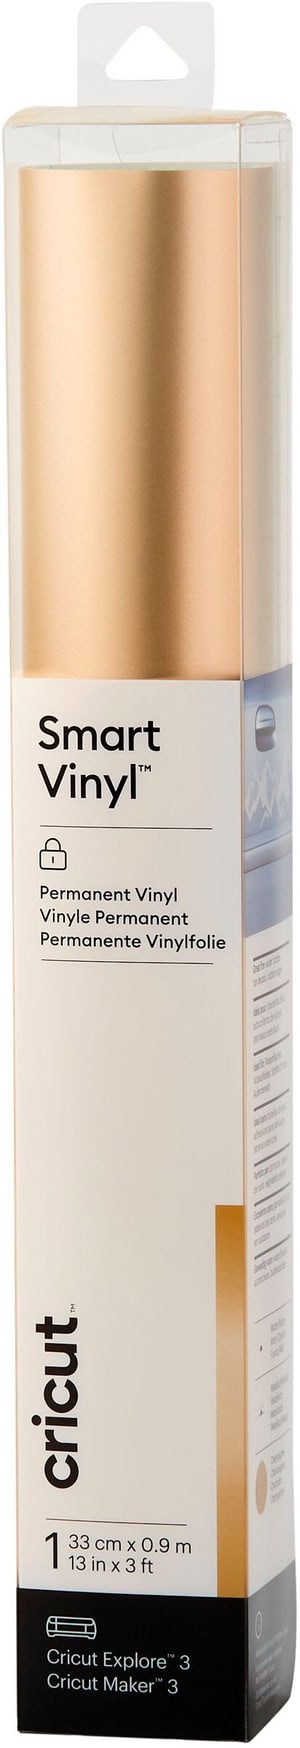 Vinylfolie Smart Matt-Metallic Permanent 33 x 91 cm, Champ